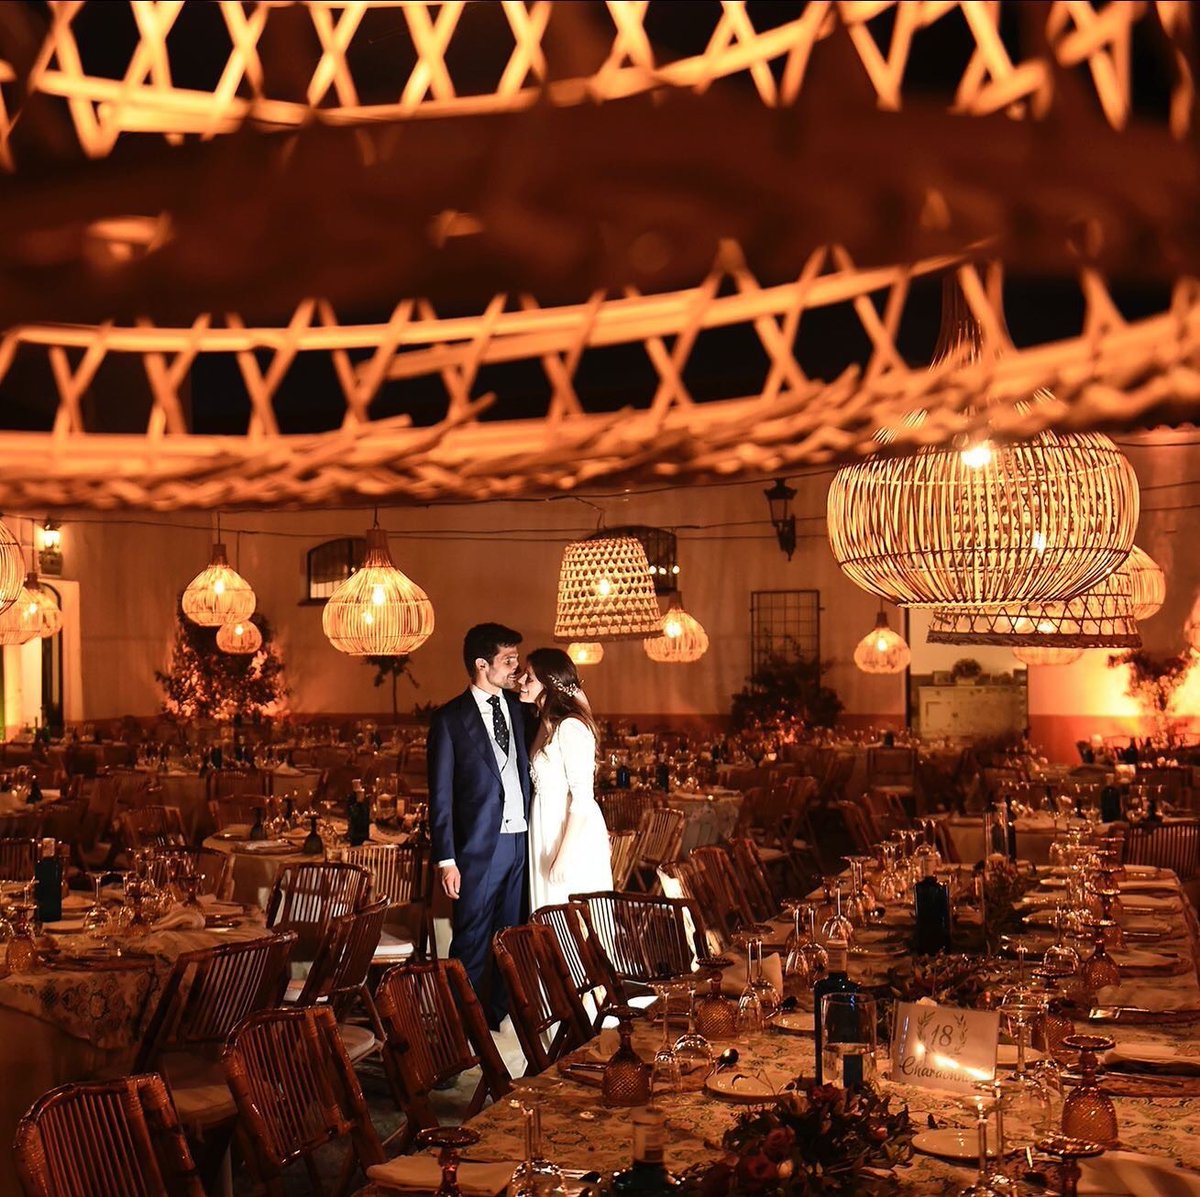 ✨ ¿Te casas este año?Ilumina tu boda para convertirla en un lugar mágico. Creamos ilusión para inspirar sentimientos💫
🎩 👰@isedex ✨
#wedding #eventos #decoración #deco #iluminacion #luz #iluminacionbodas #iluminaciondecorativa #weddinglighting #bodasisedex #bodasbonitas